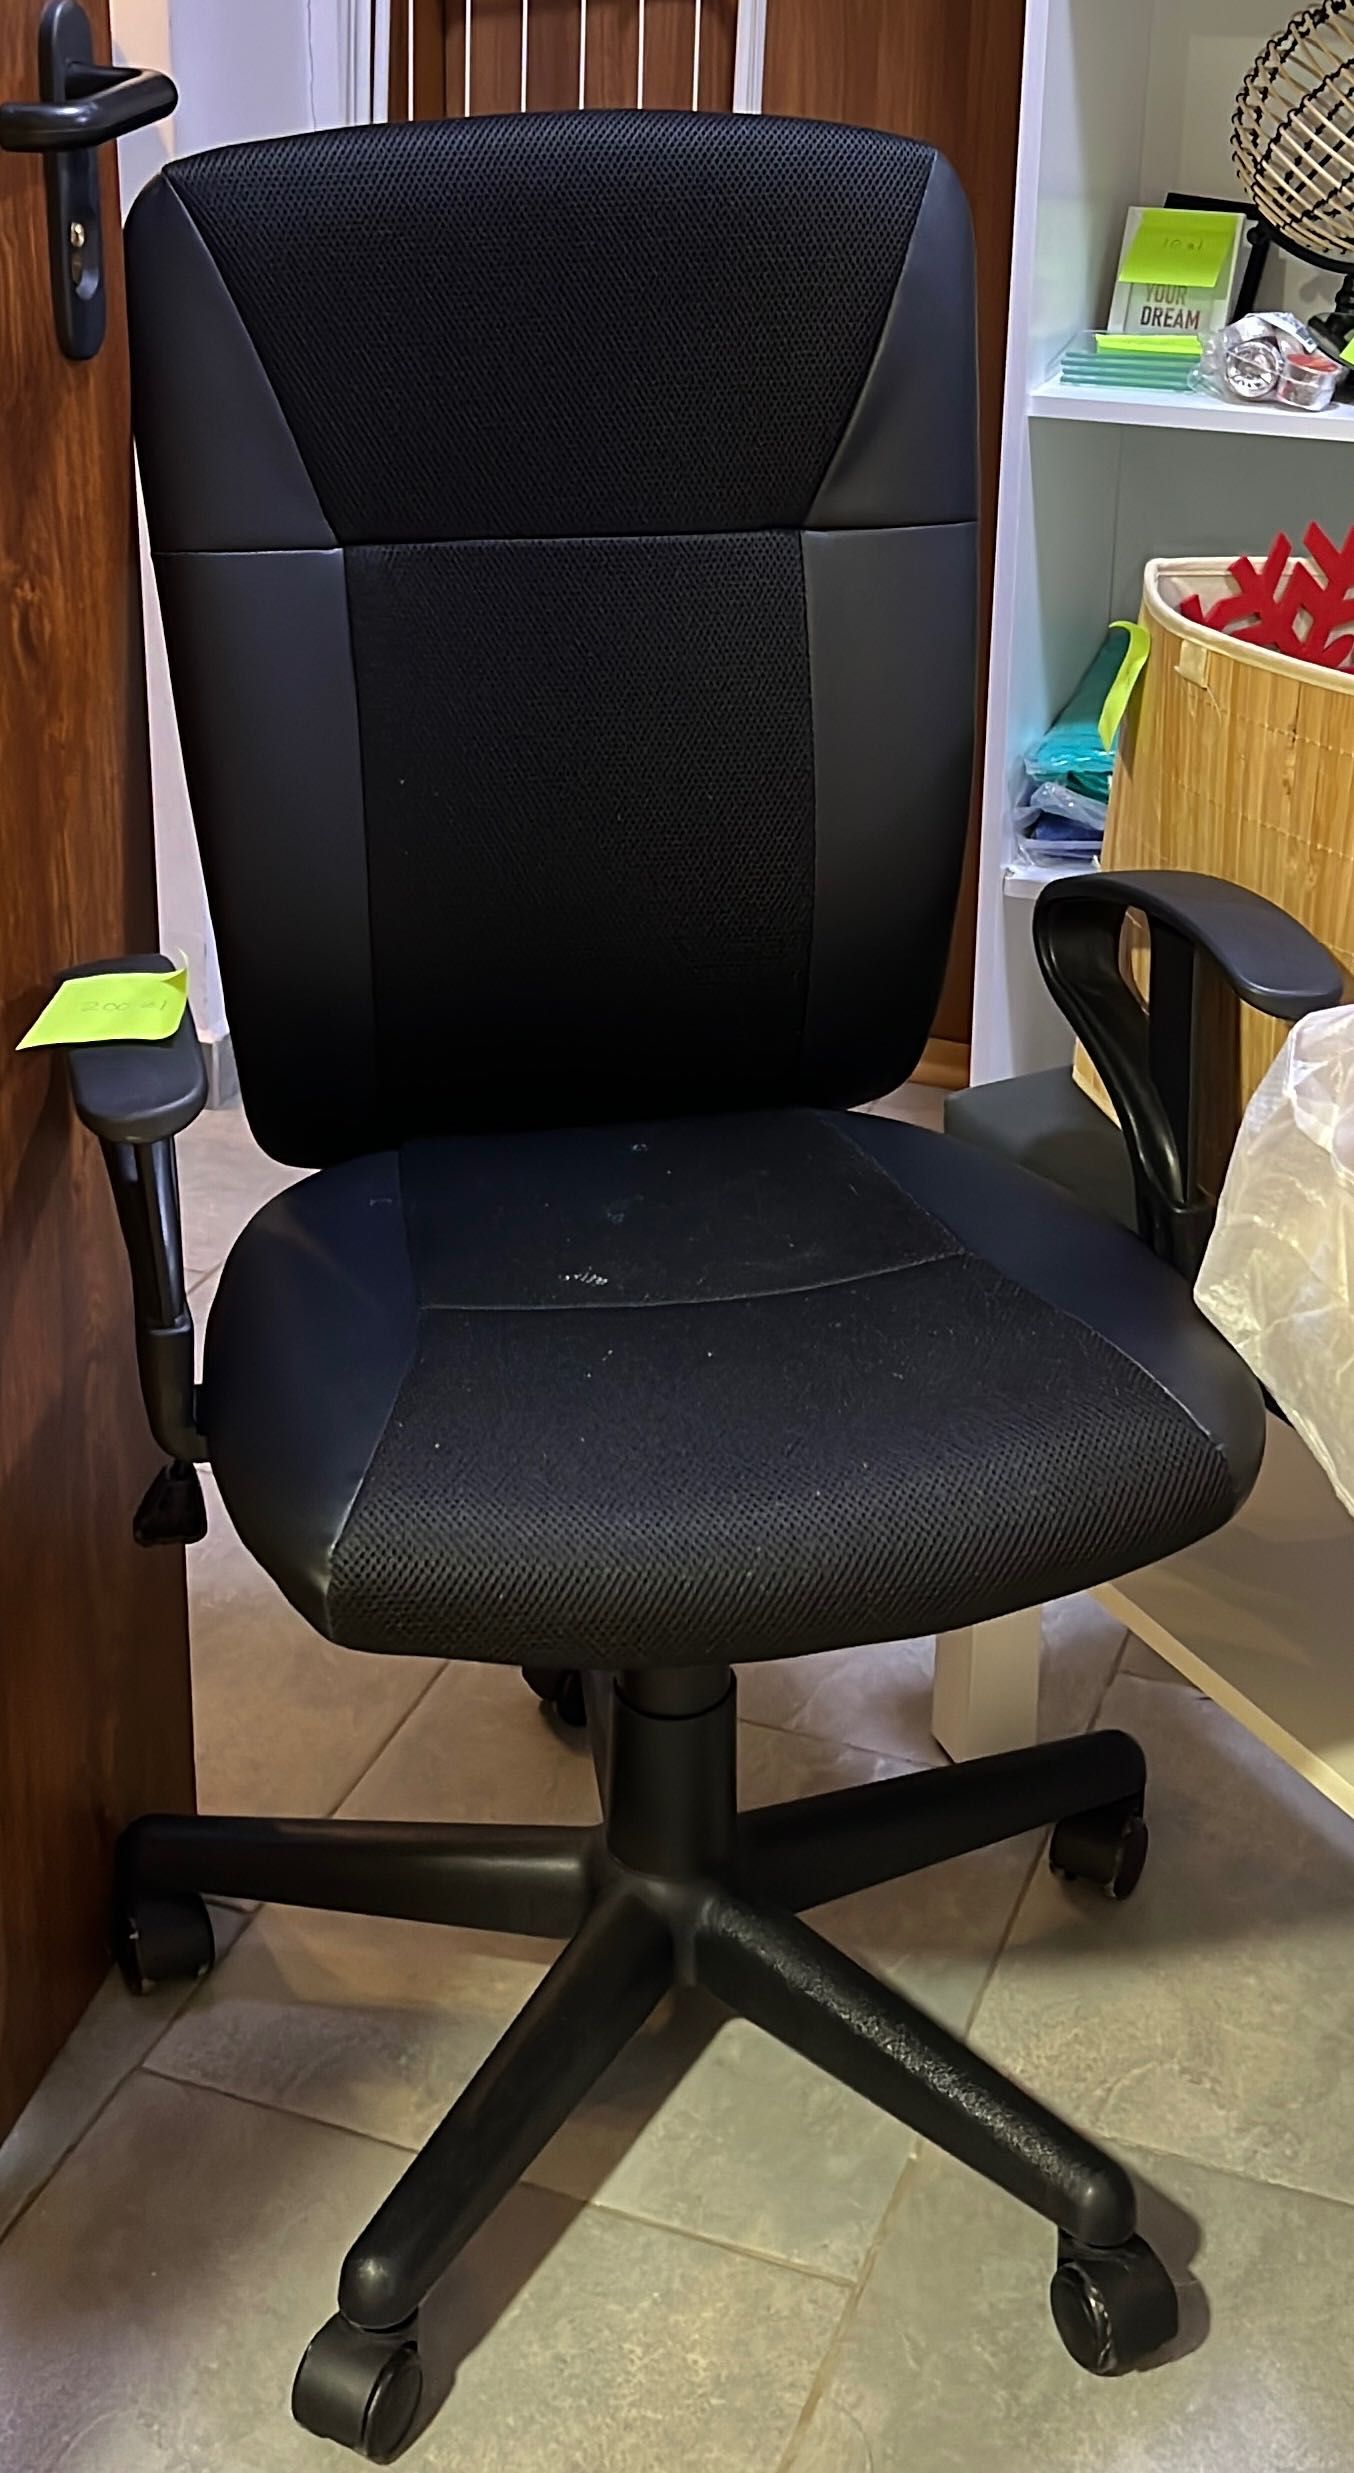 Krzesło biurowe SUNDS czarny